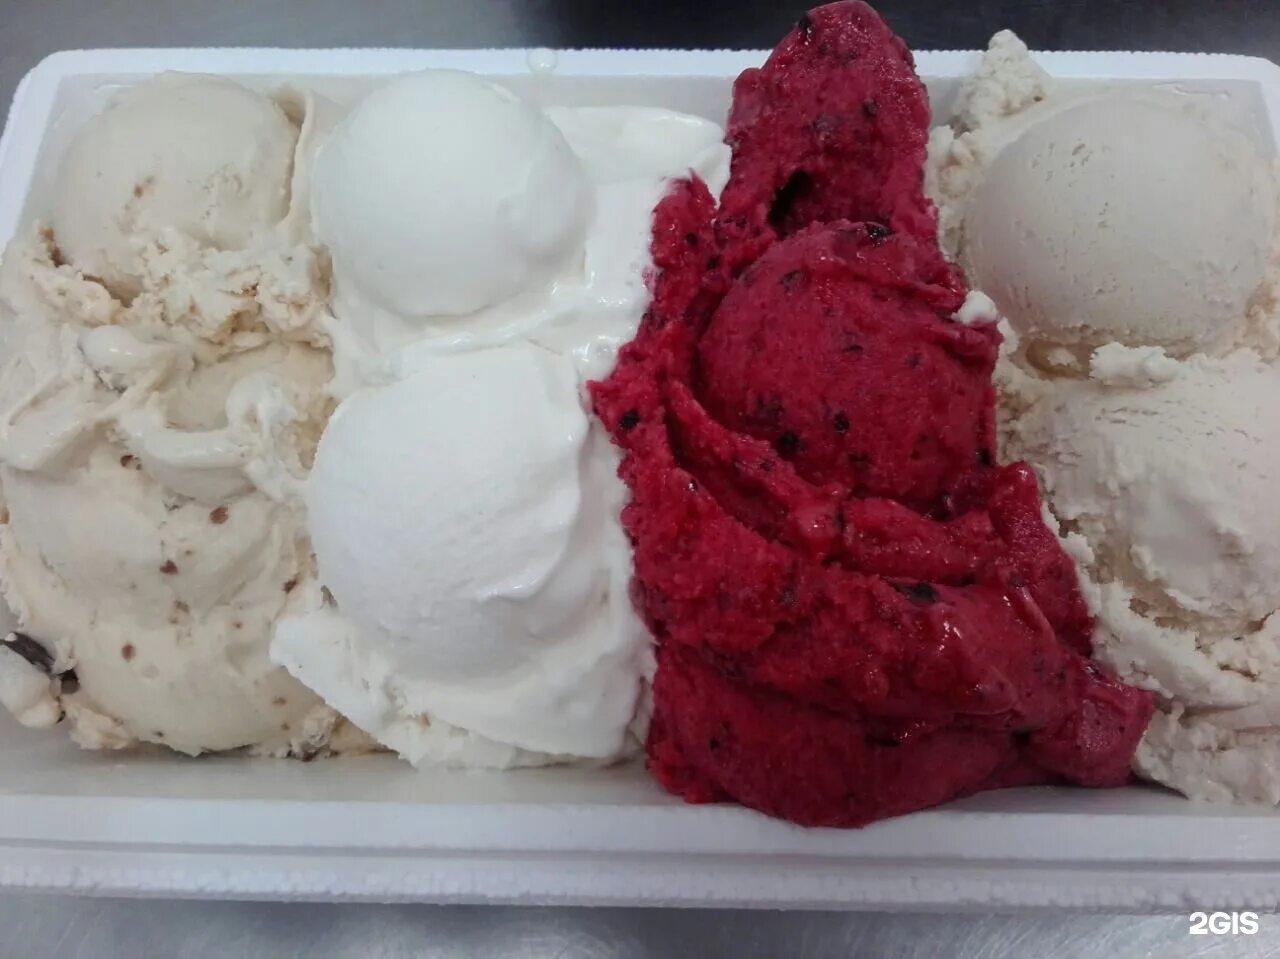 Мороженое в красном и белом. Джелато Новосибирск мороженое. Фабрика мороженого Новосибирск джелато. Красное мороженое.